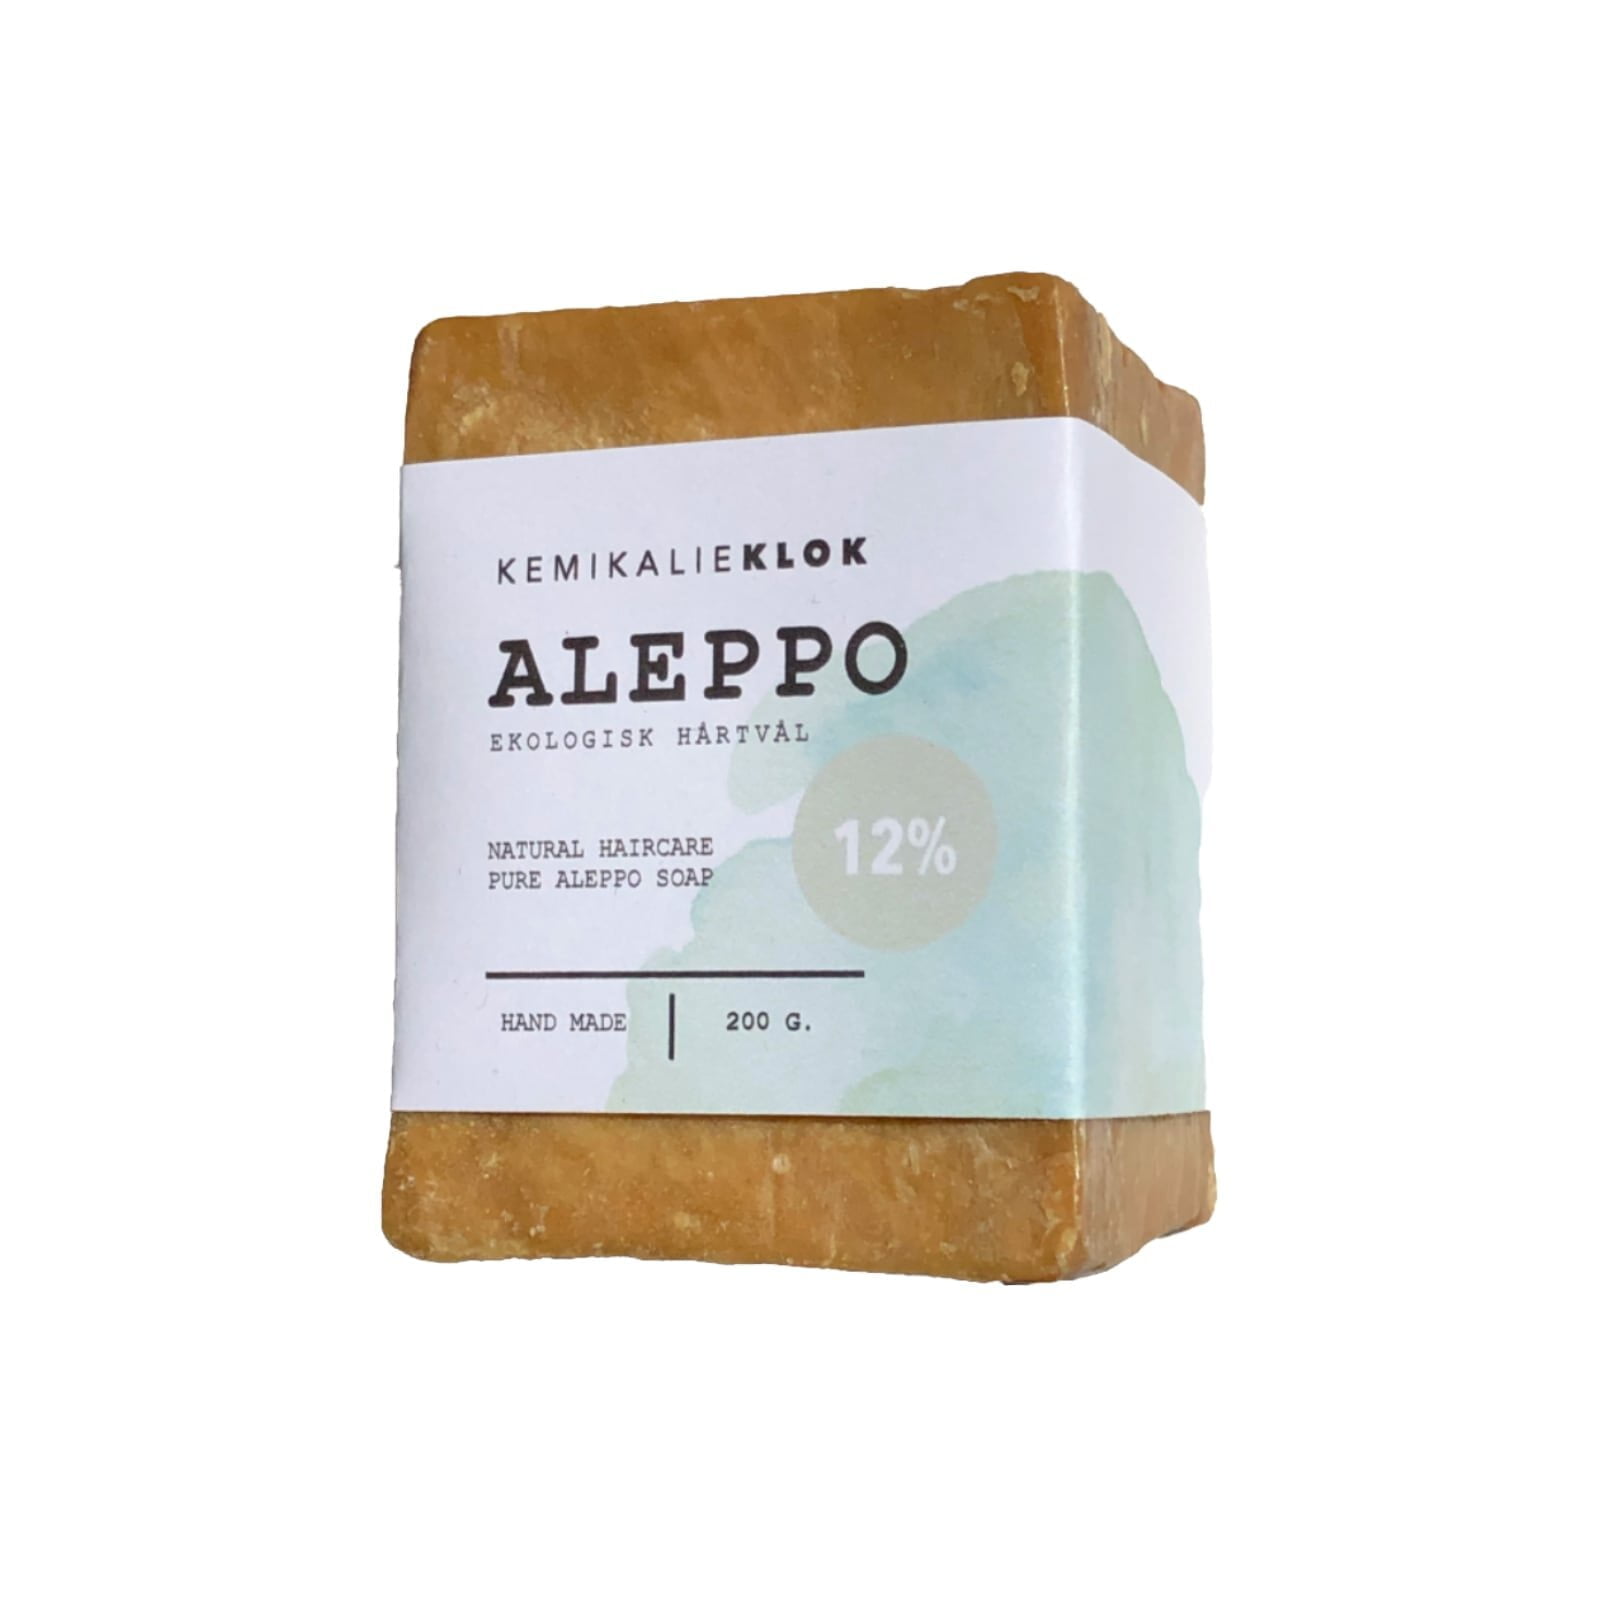 Aleppotvål med 12% lagerbärsolja